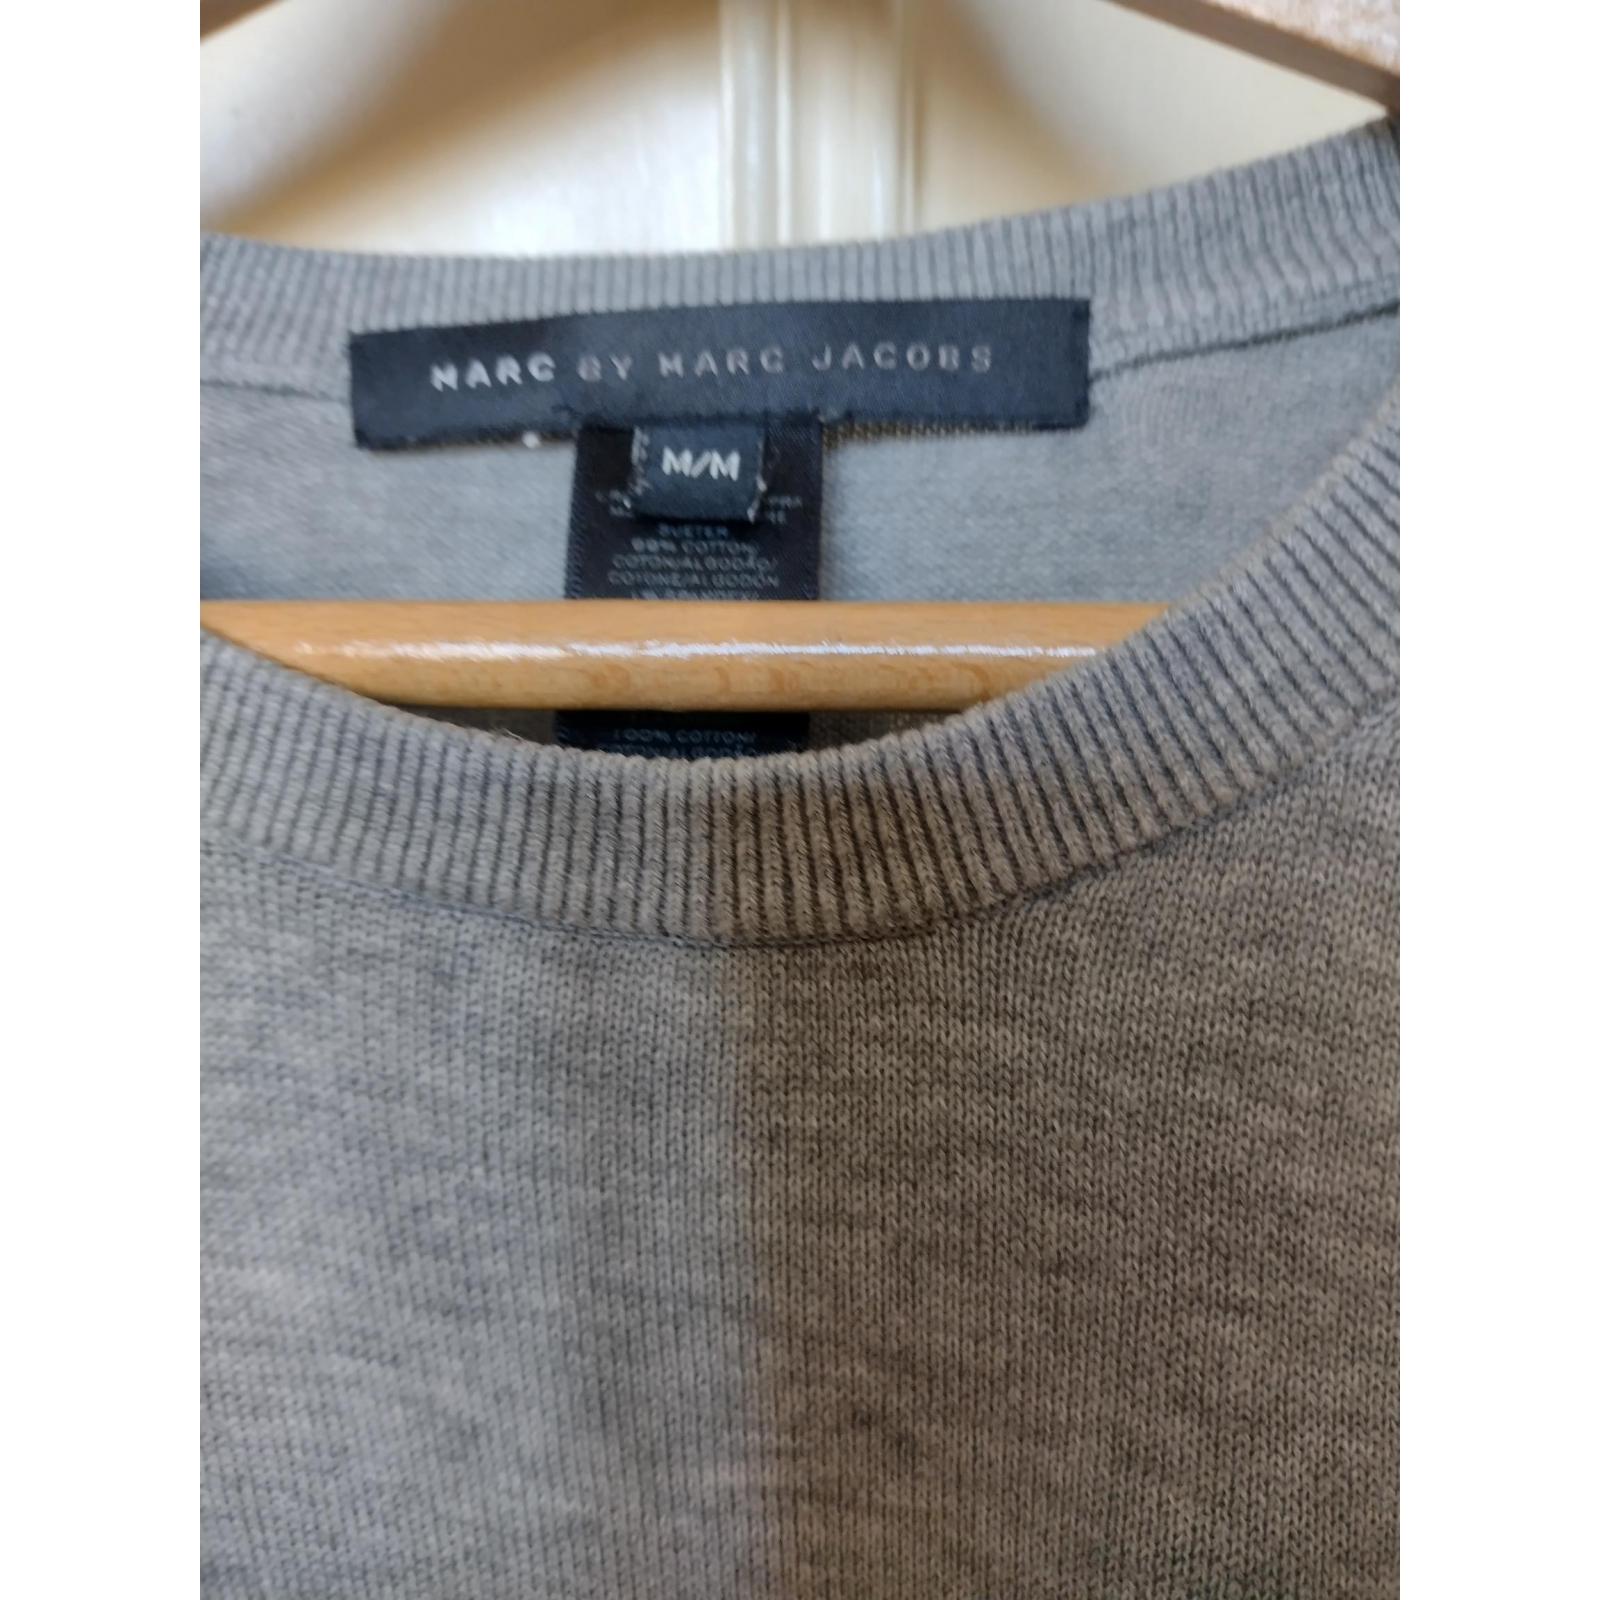 Bluzka bawełna Marc by Marc Jacobs